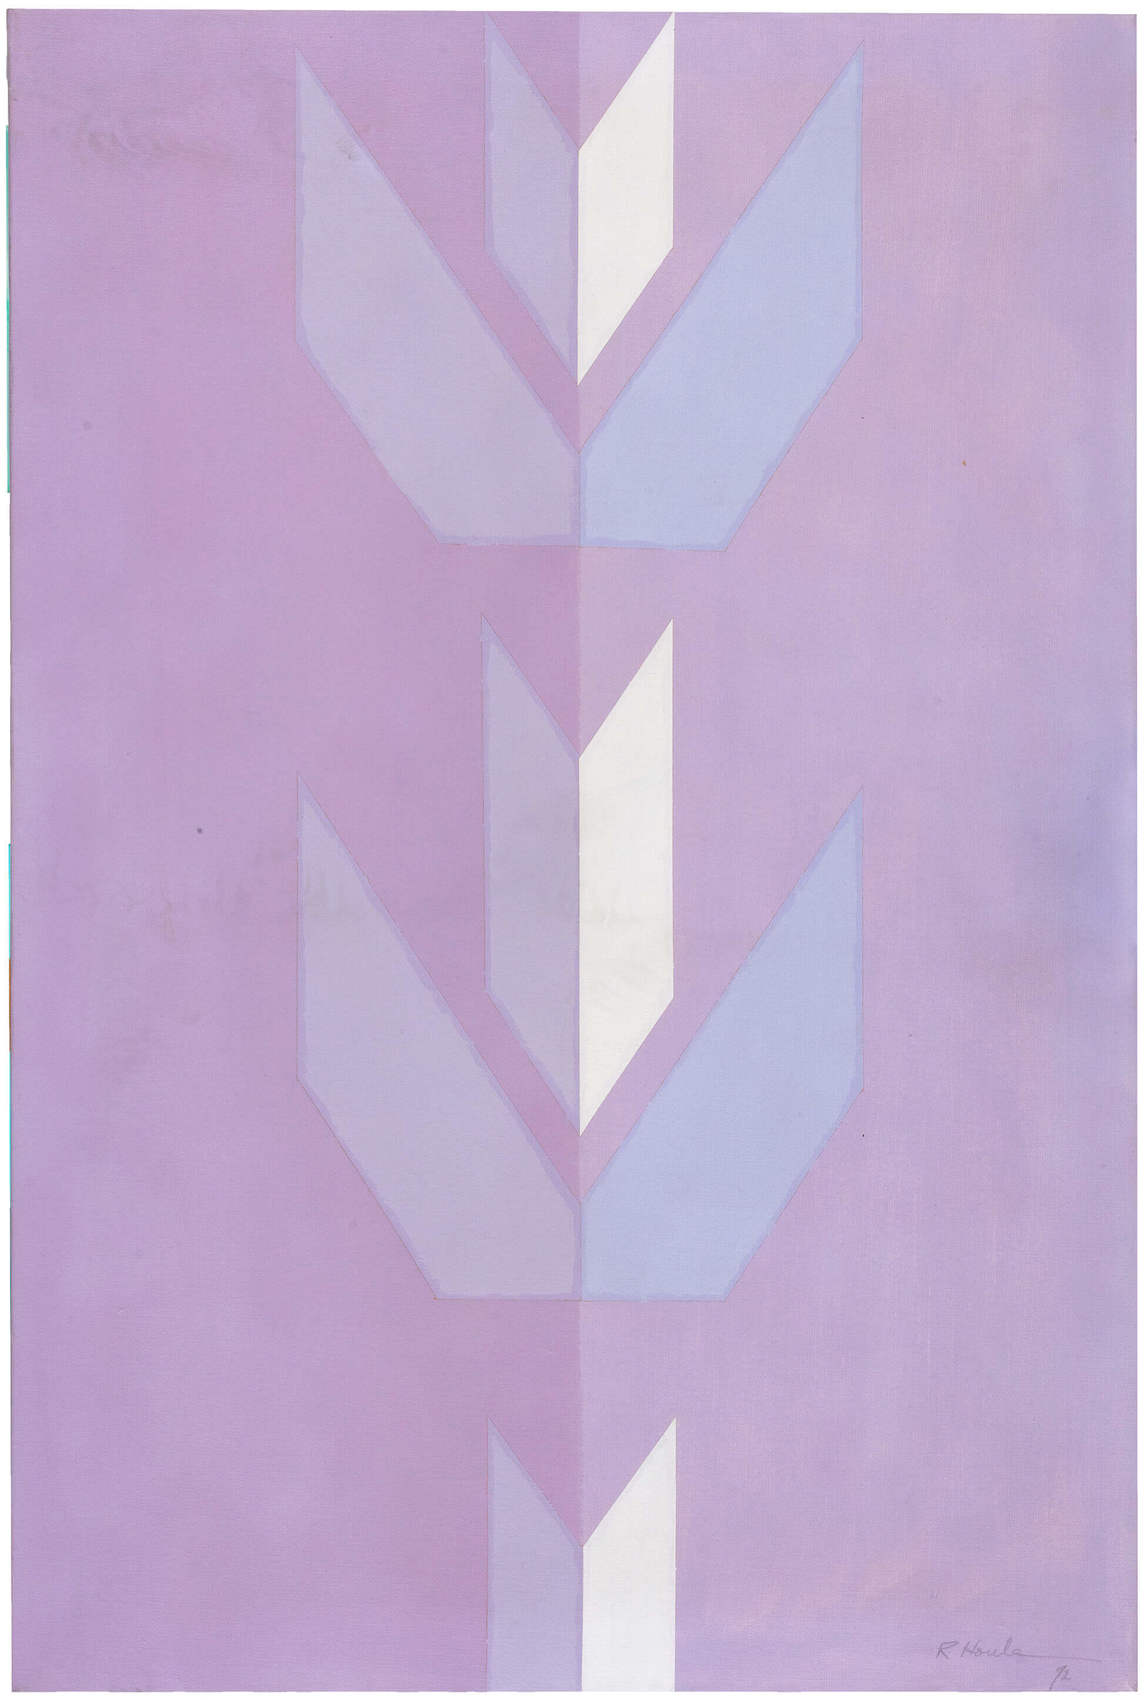 Ojibwa Motif, Purple Leaves, Series No. 2, 1972​​​​​​​, by Robert Houle